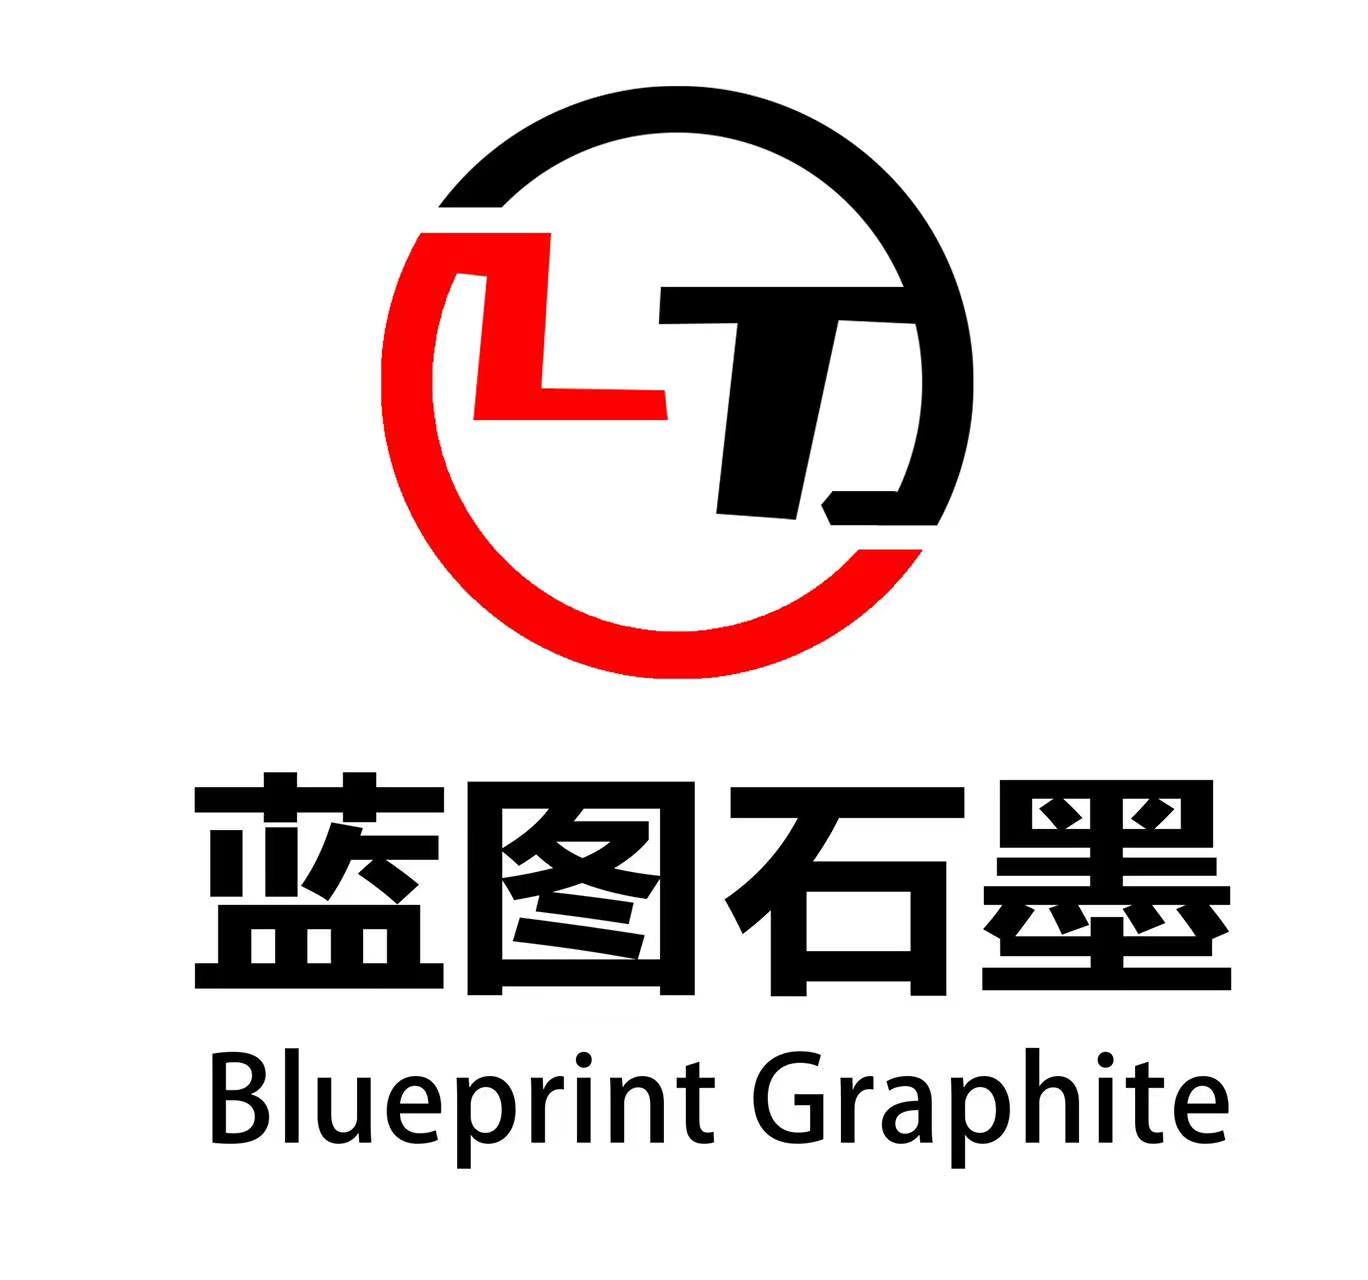 Blueprint Graphite Products Co., Ltd